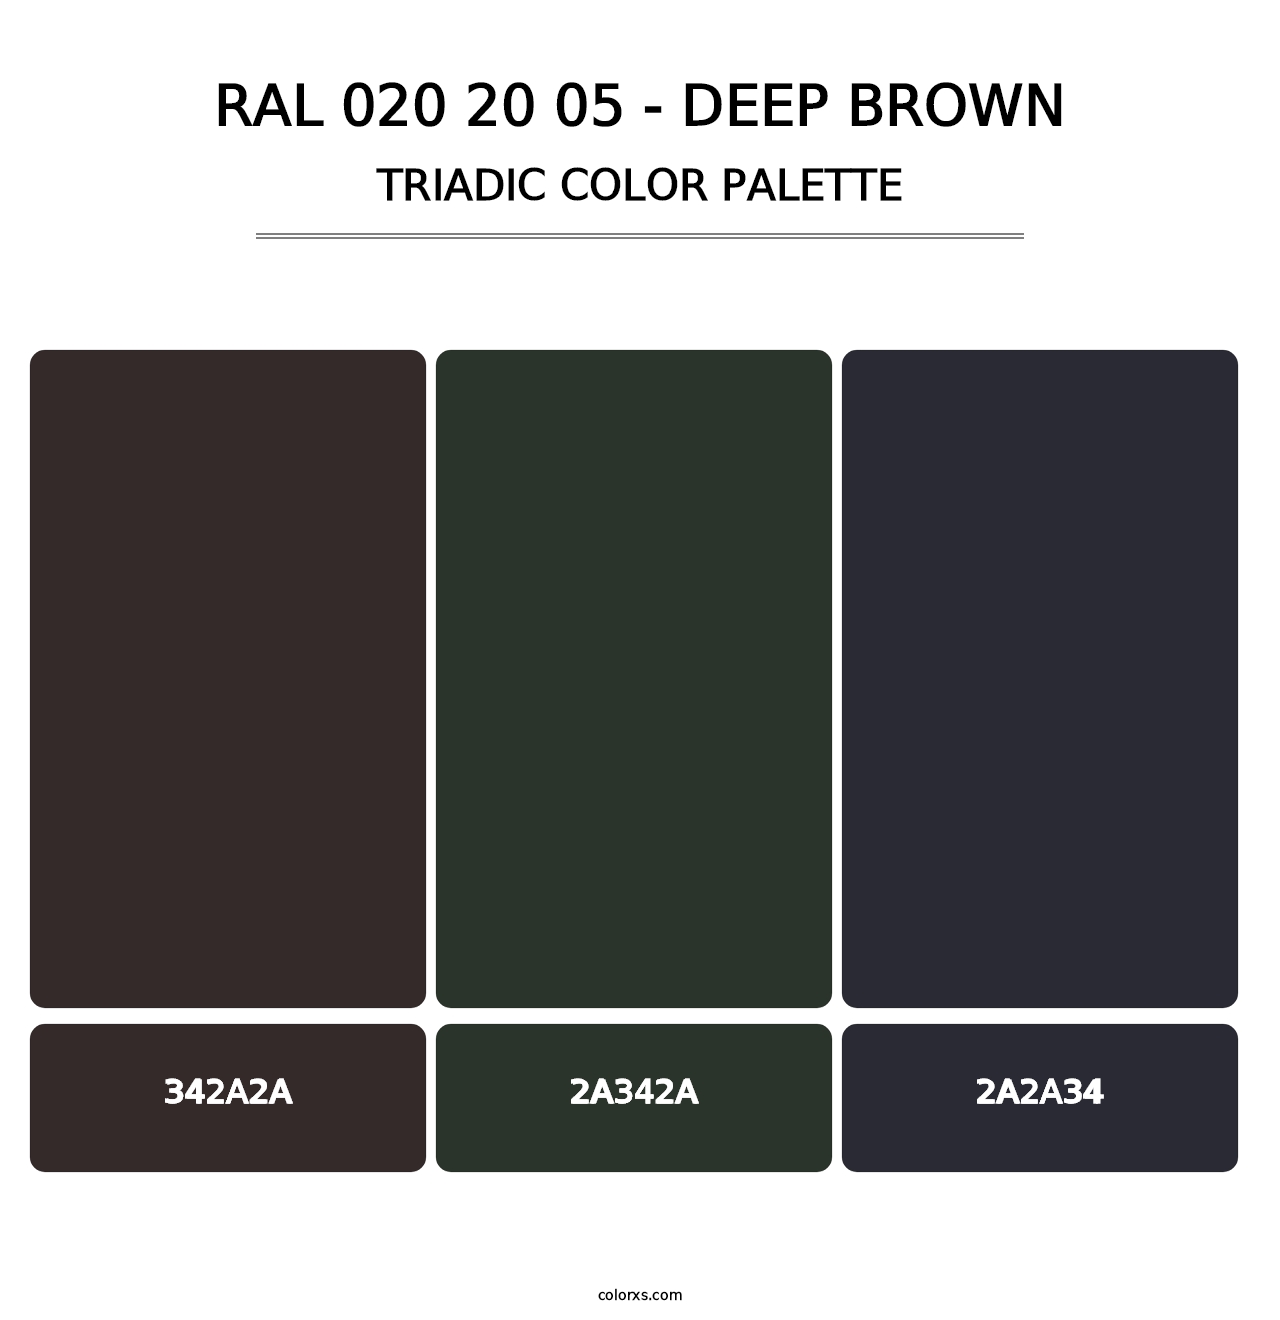 RAL 020 20 05 - Deep Brown - Triadic Color Palette